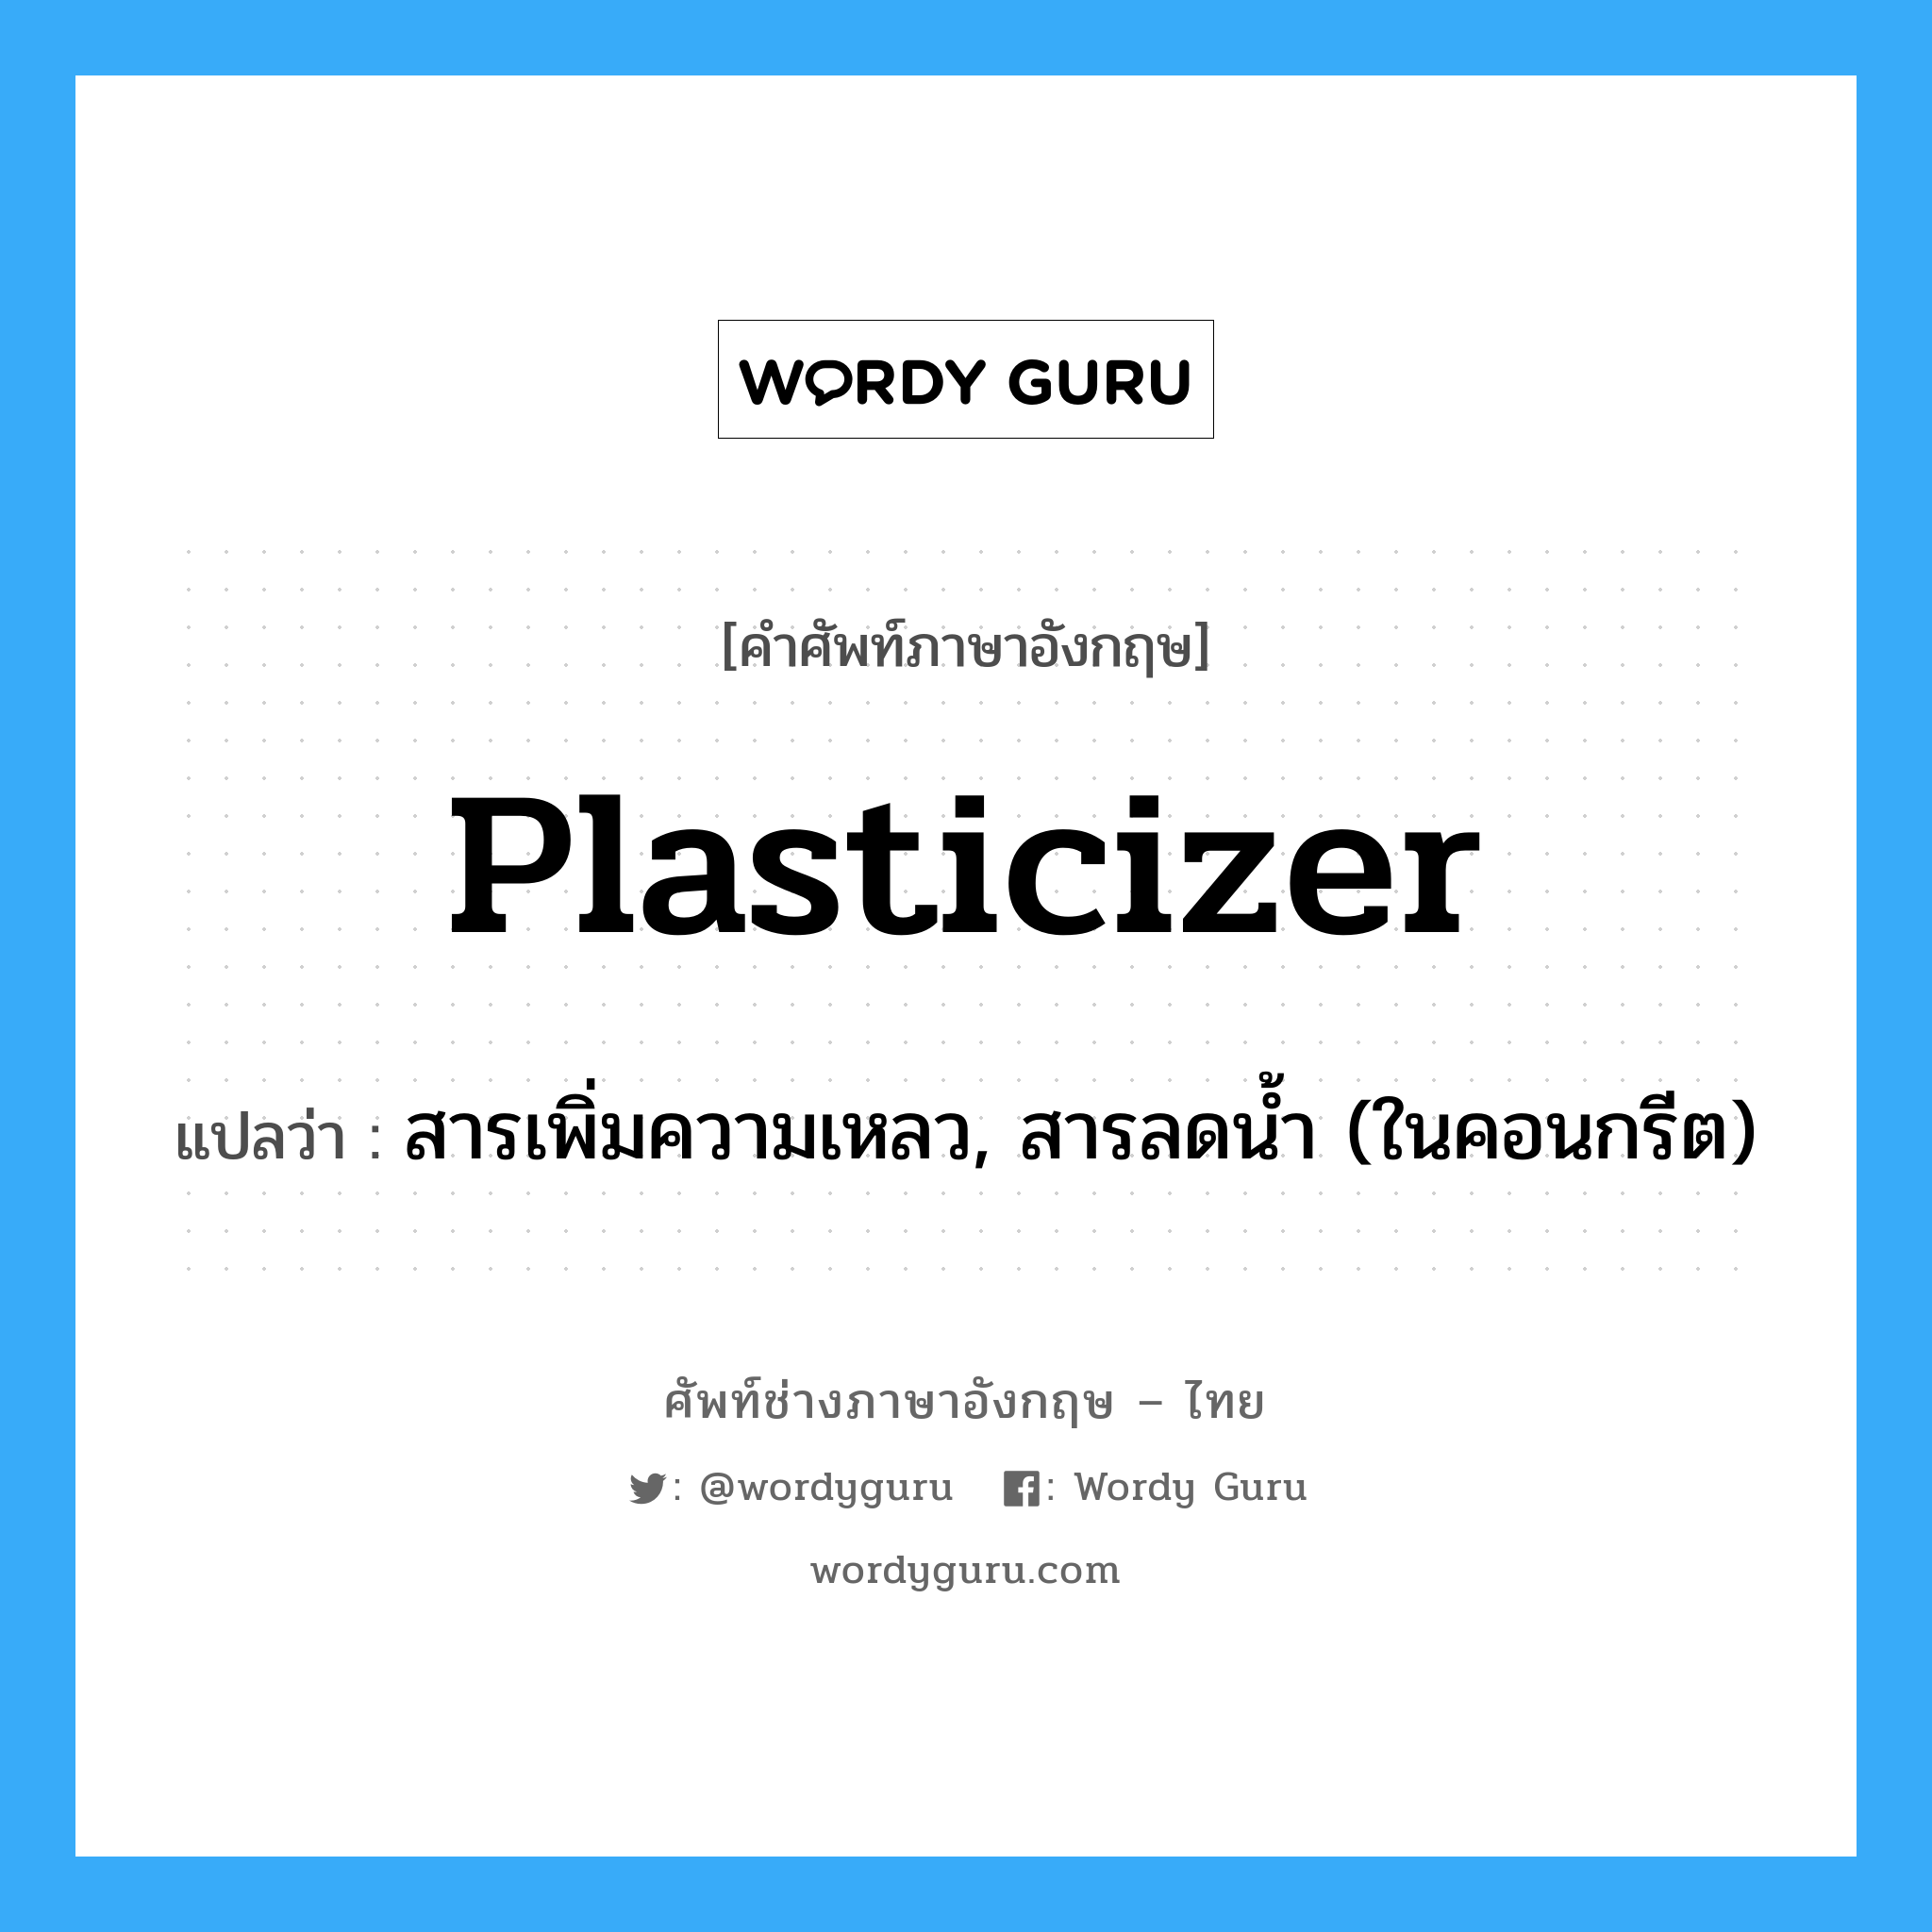 plasticizer แปลว่า?, คำศัพท์ช่างภาษาอังกฤษ - ไทย plasticizer คำศัพท์ภาษาอังกฤษ plasticizer แปลว่า สารเพิ่มความเหลว, สารลดน้ำ (ในคอนกรีต)